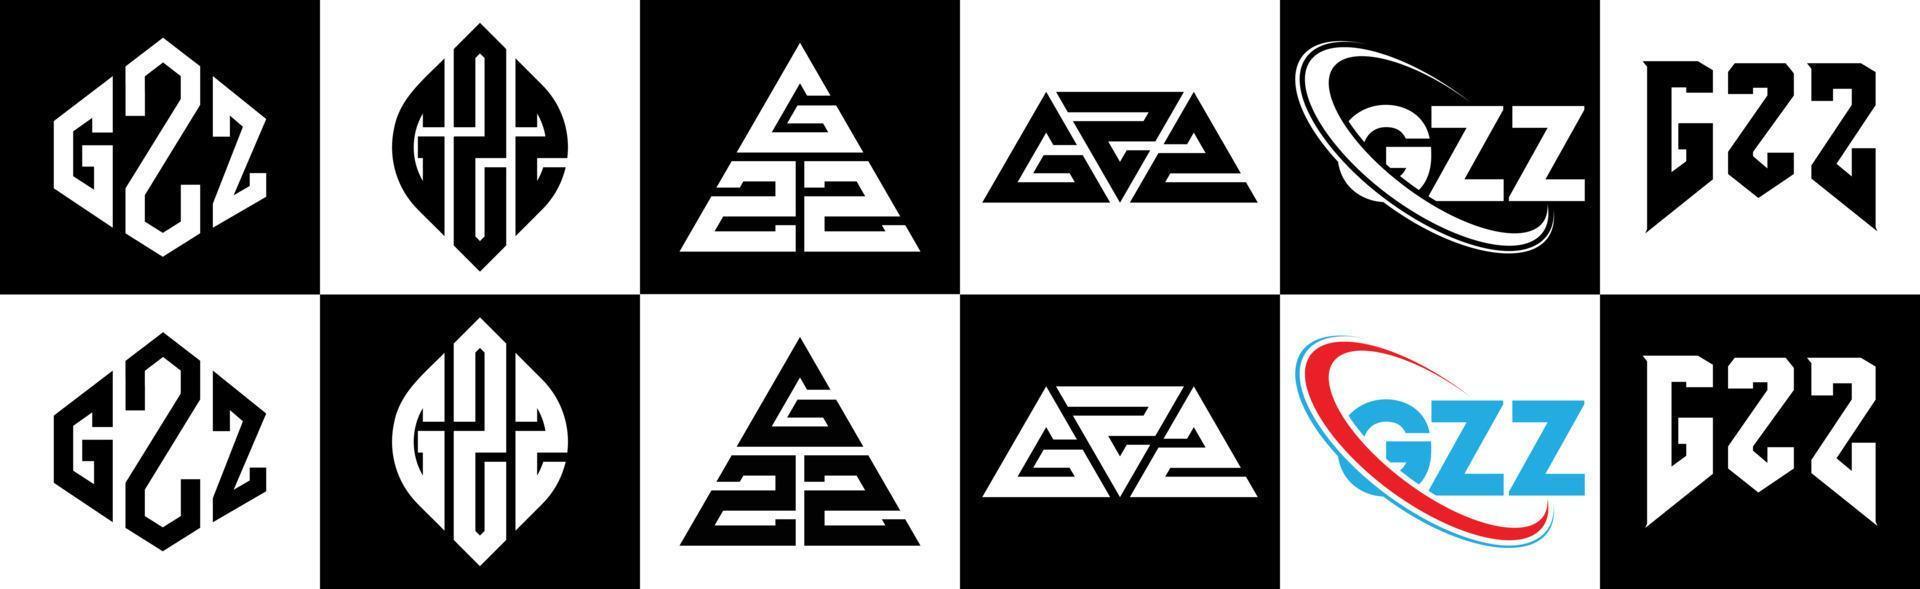 création de logo de lettre gzz en six styles. gzz polygone, cercle, triangle, hexagone, style plat et simple avec logo de lettre de variation de couleur noir et blanc dans un plan de travail. logo minimaliste et classique gzz vecteur